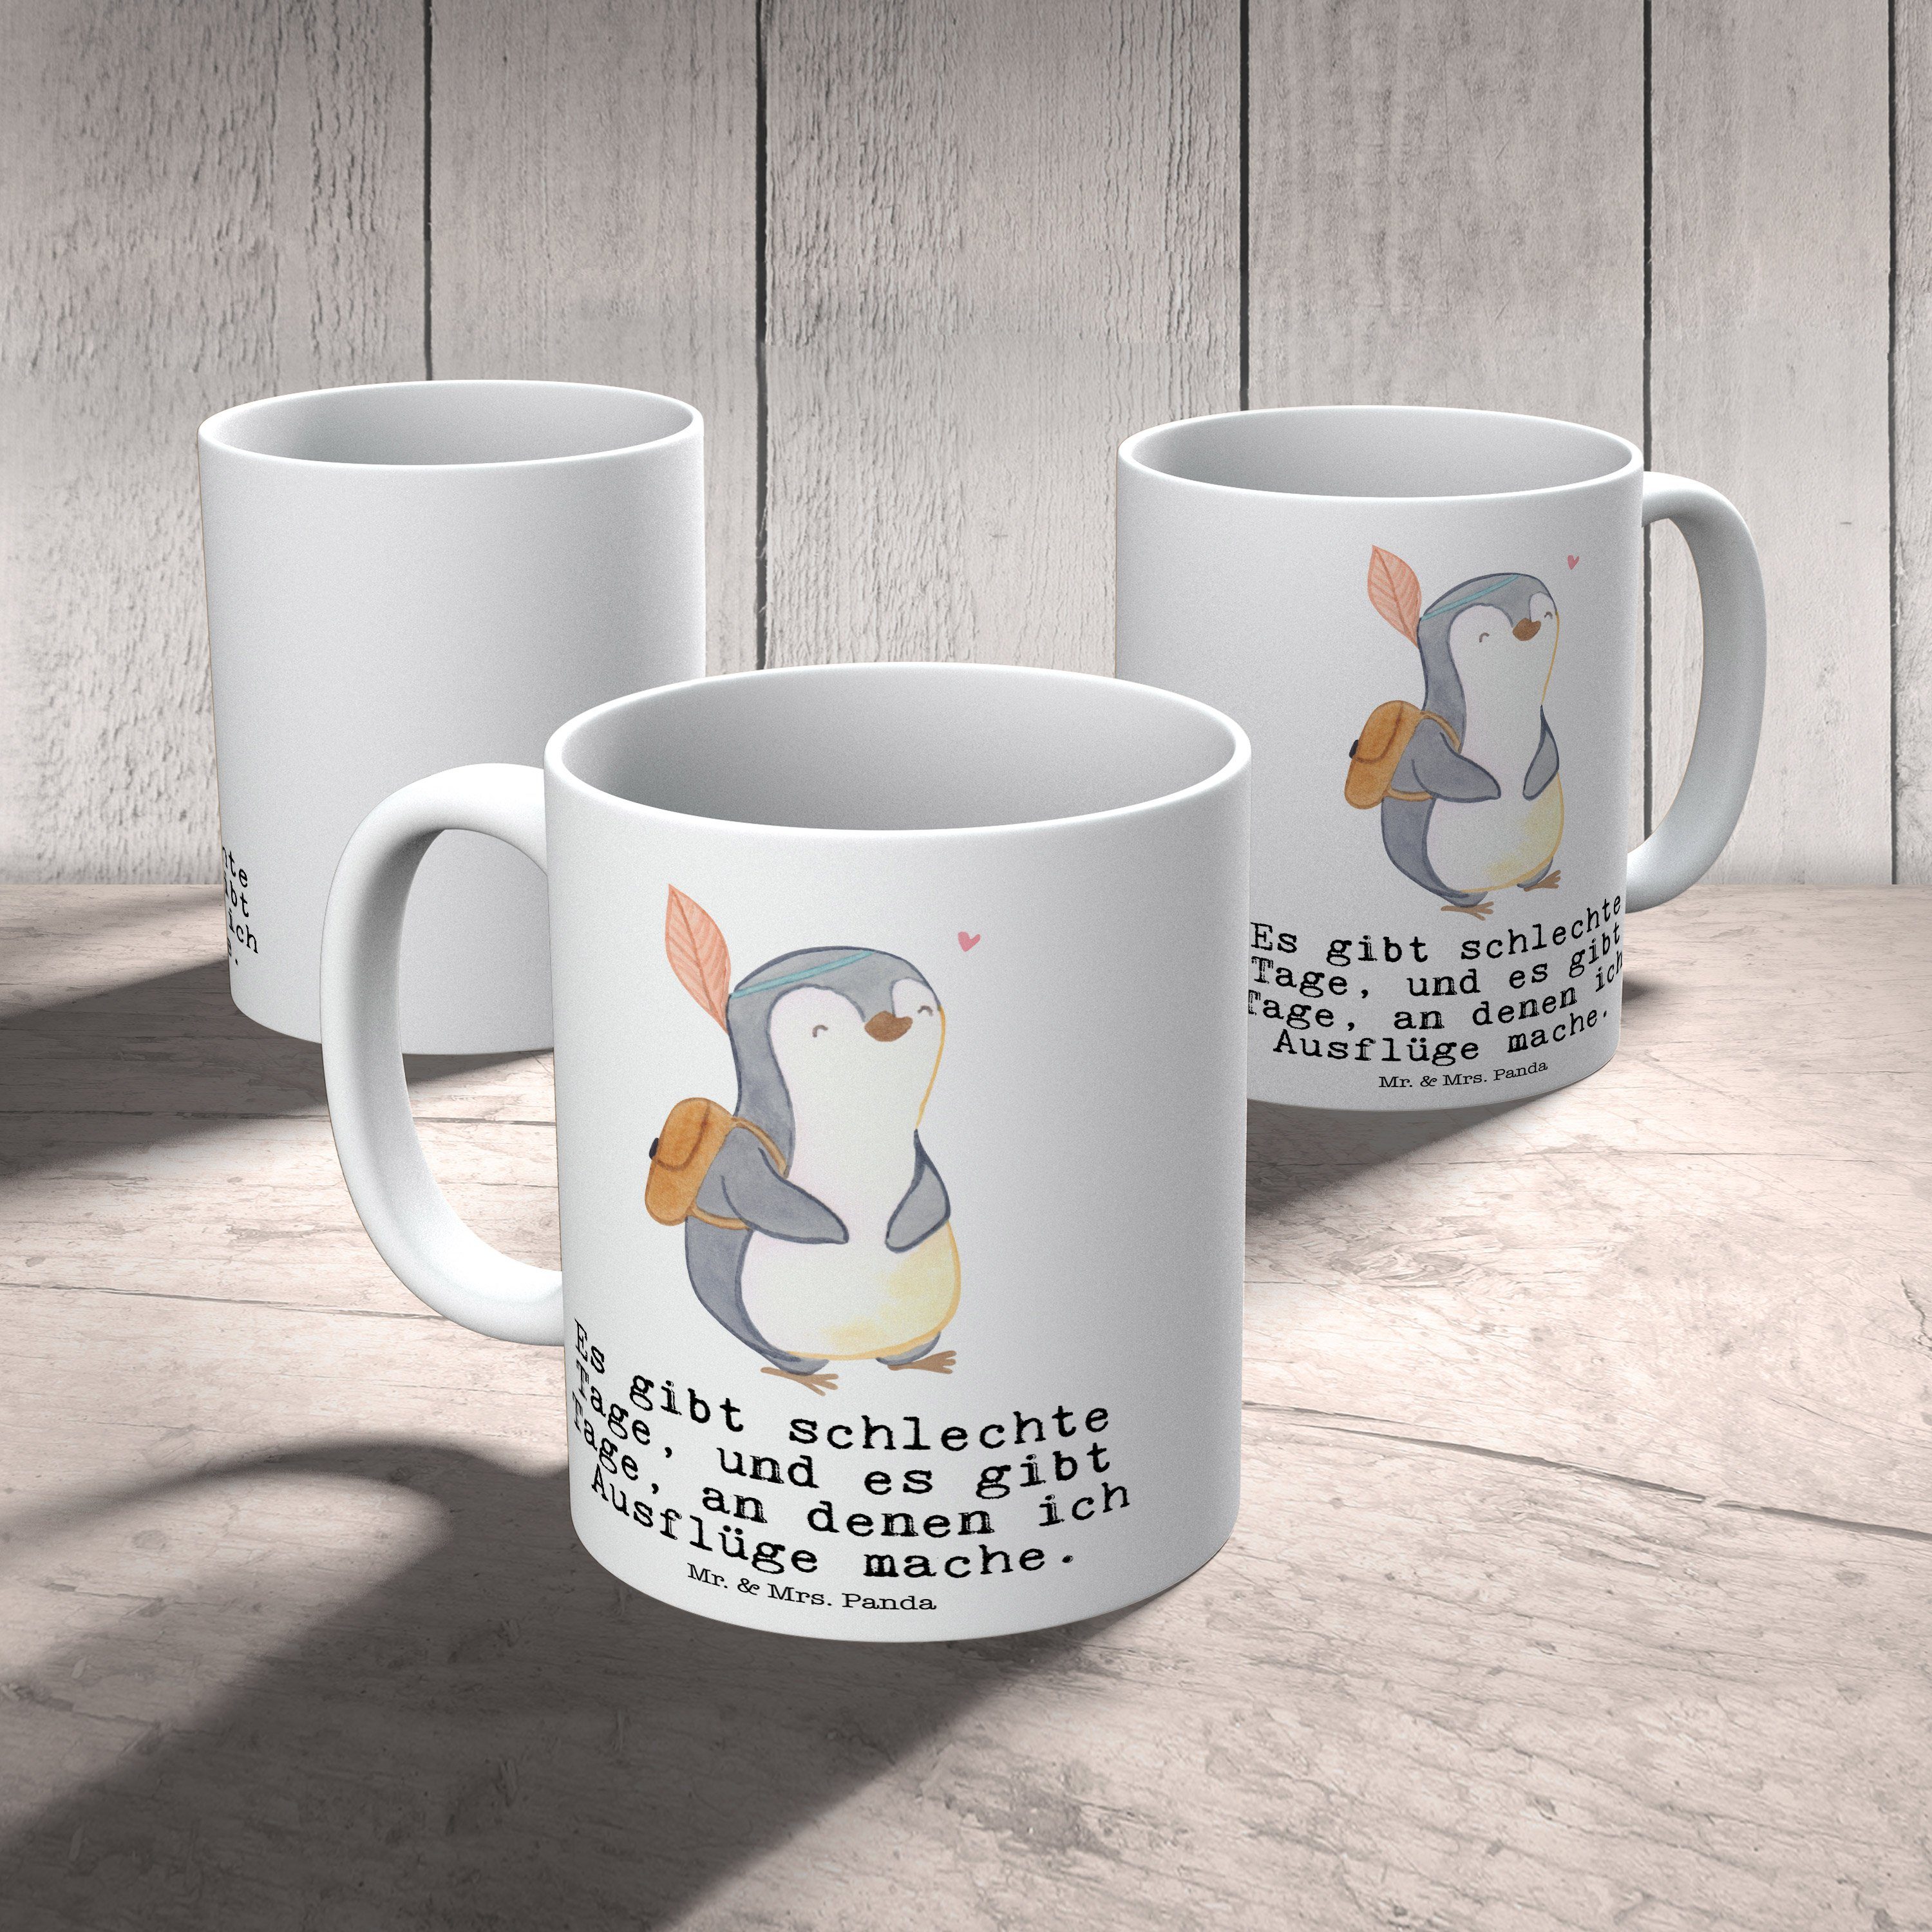 Mr. & Mrs. Panda Weiß Tasse Schenken, Ausflüge Geschenk, Pinguin Keramik machen, - Ta, Tage Ausflug 